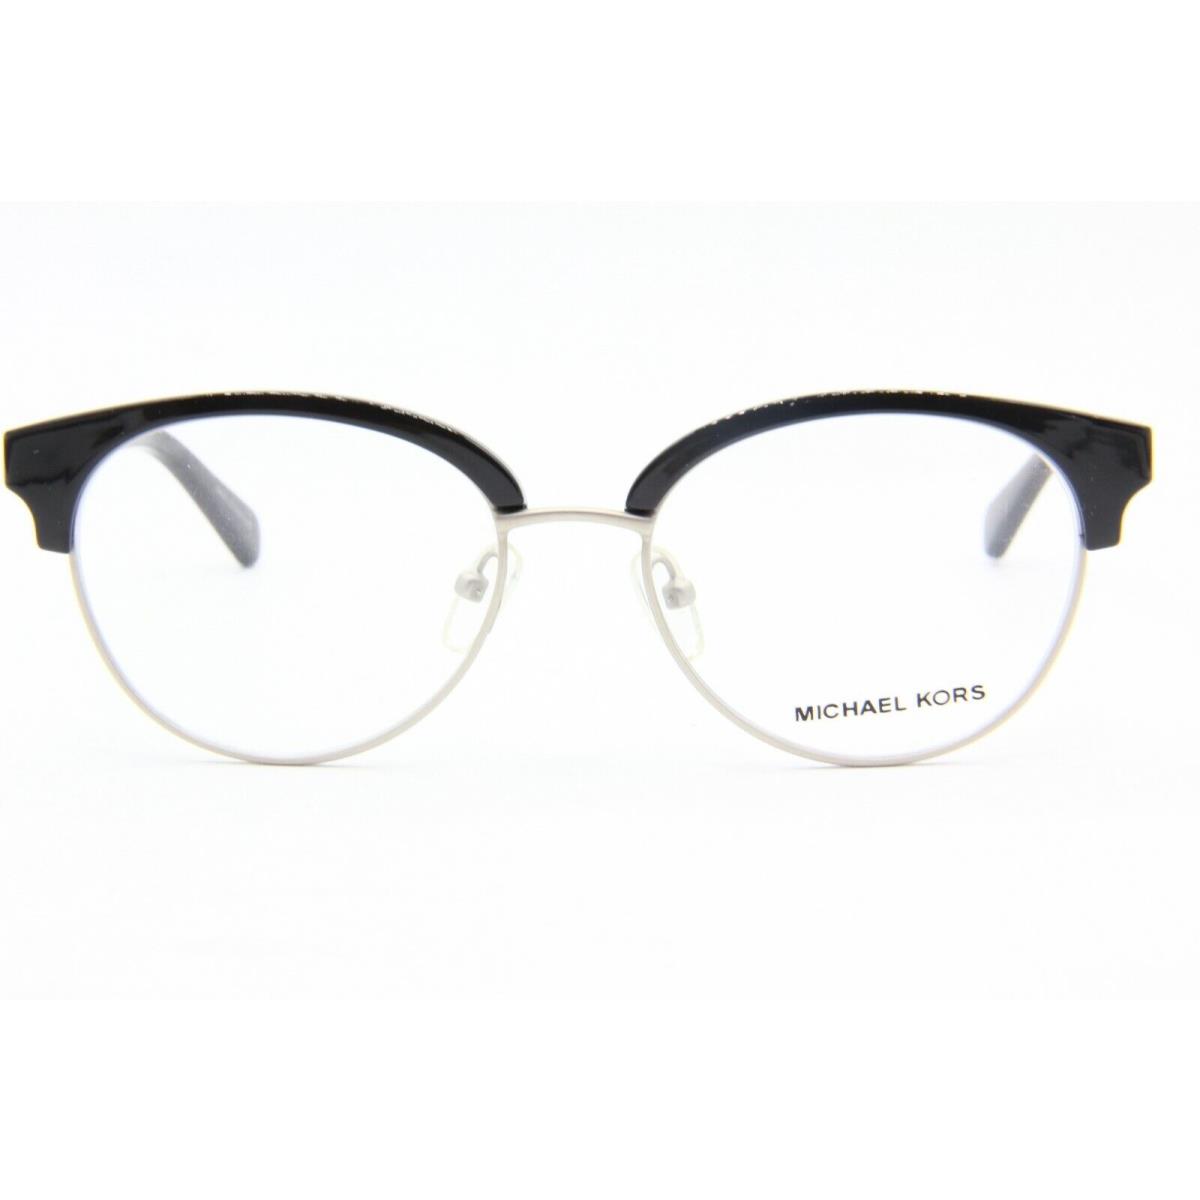 Michael Kors eyeglasses  - Black Frame 0